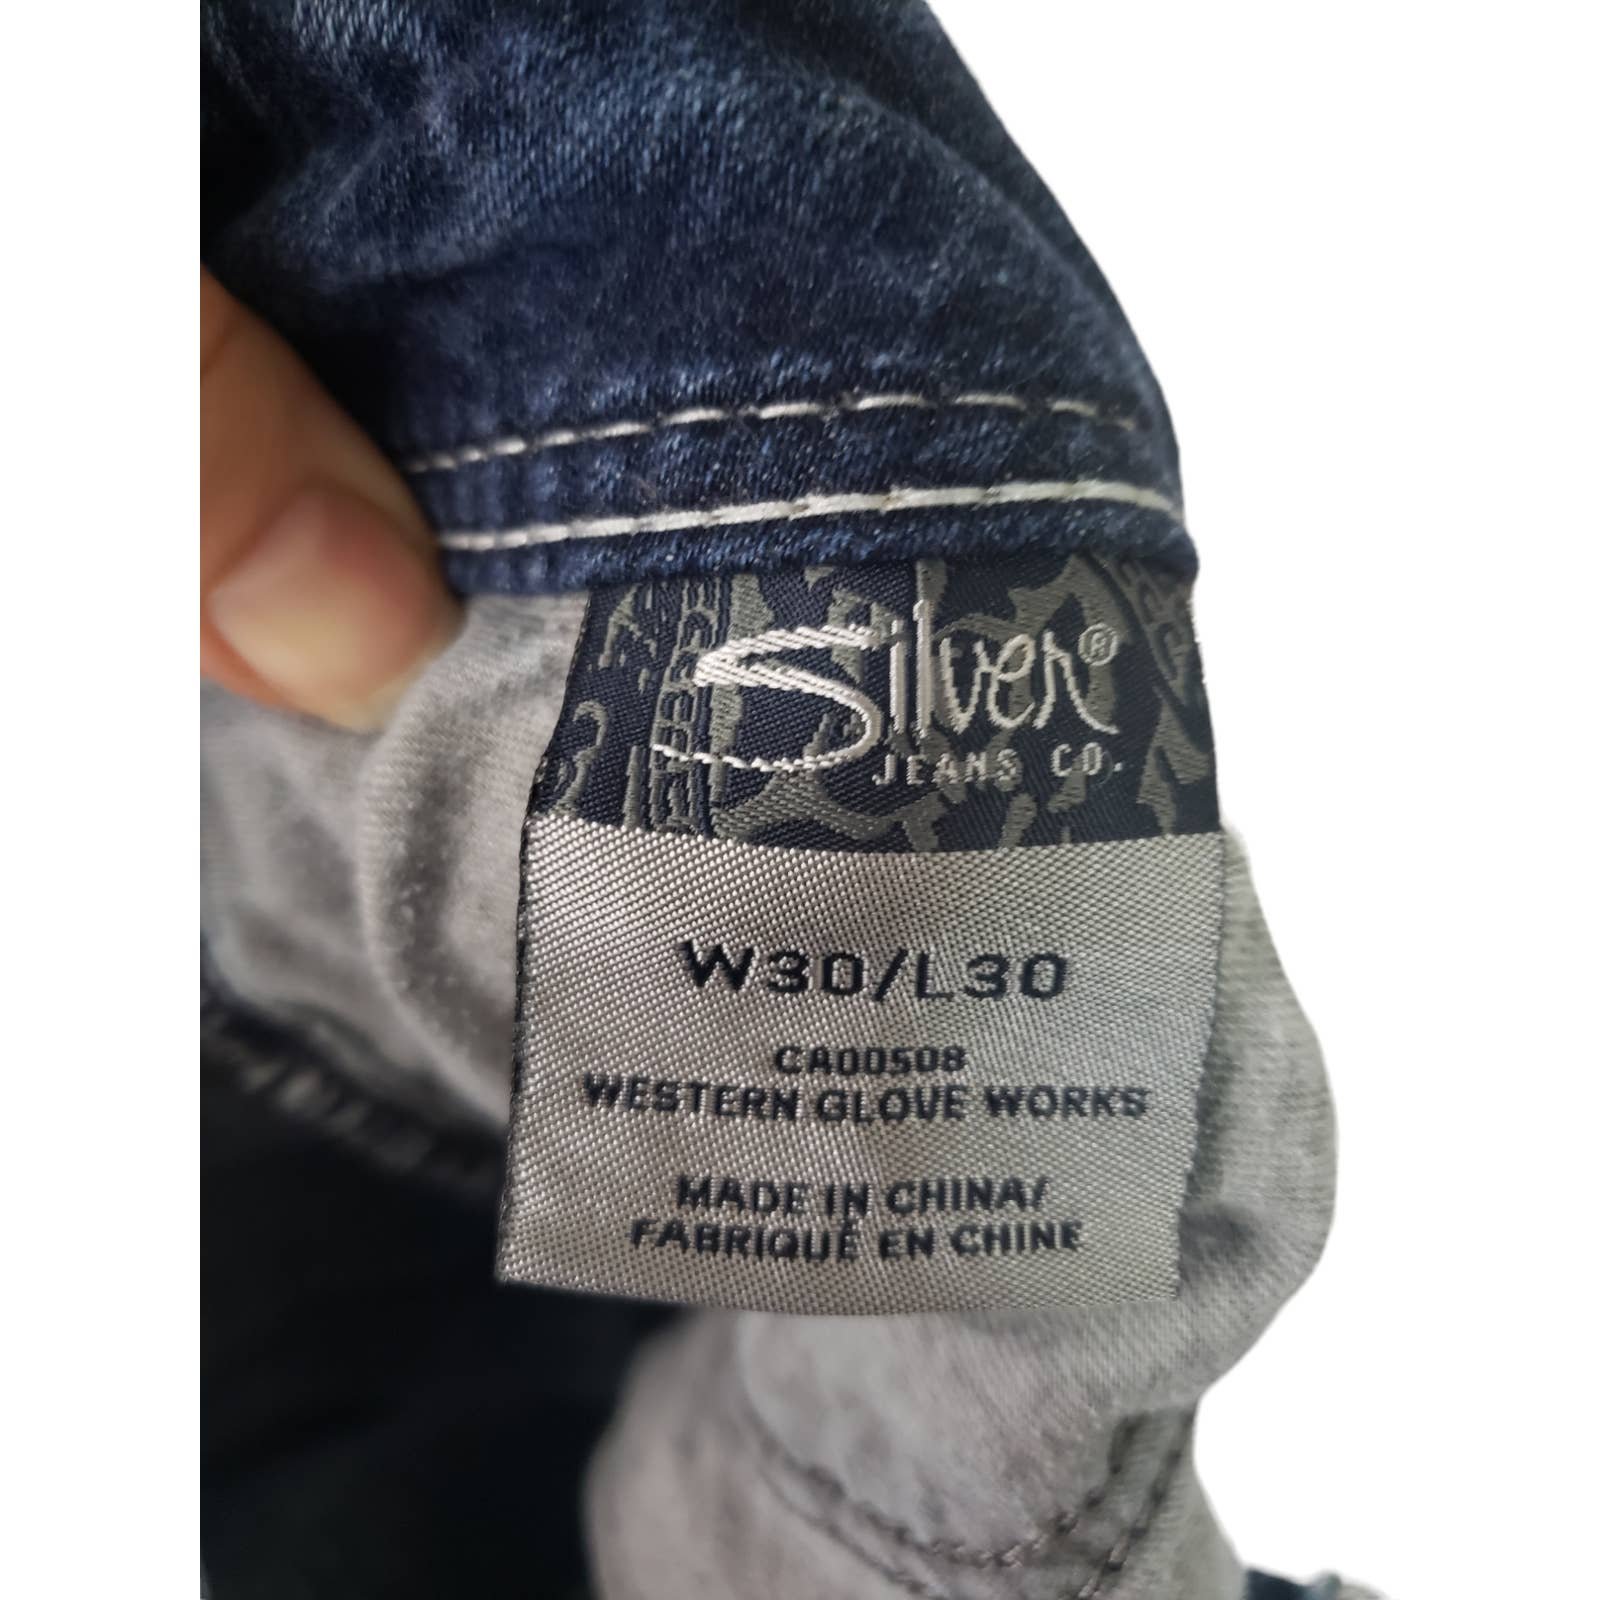 Cheap Silver Suki Women´s Bootcut Blue Denim Jeans sz. 30